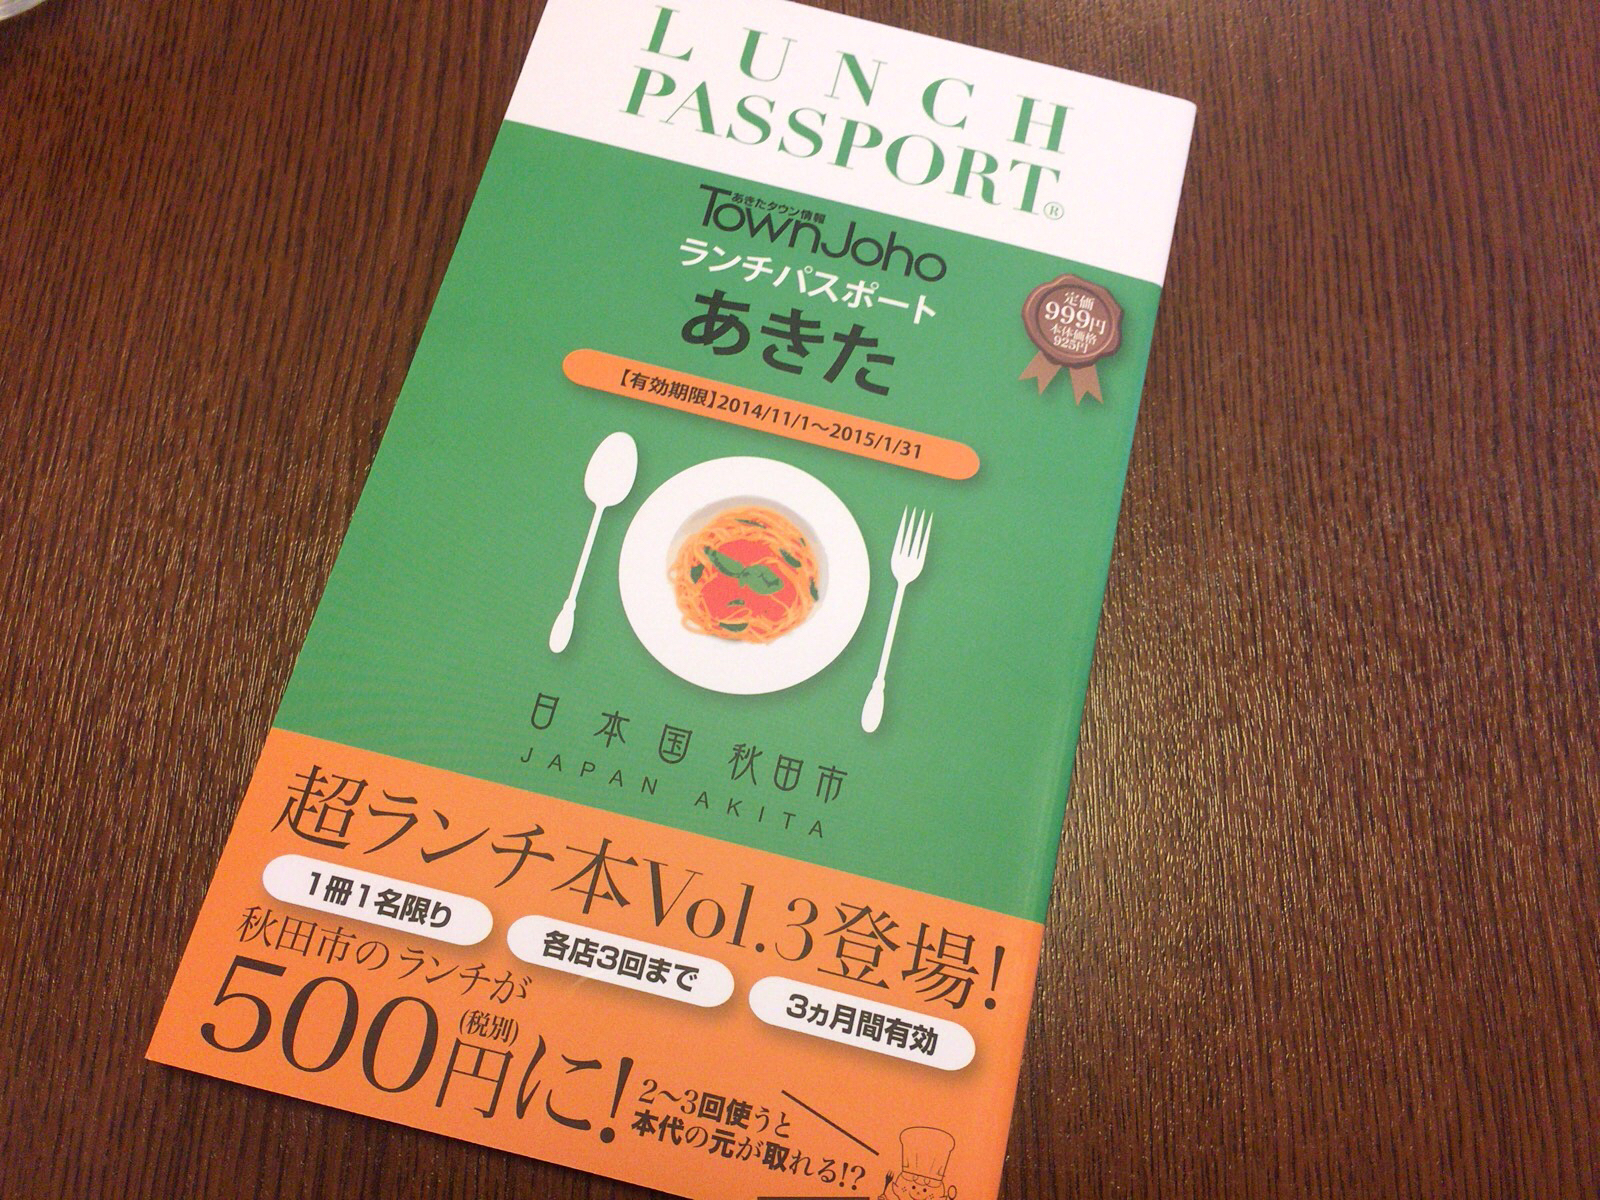 ランチパスポート秋田vol3を買ってしまいました。